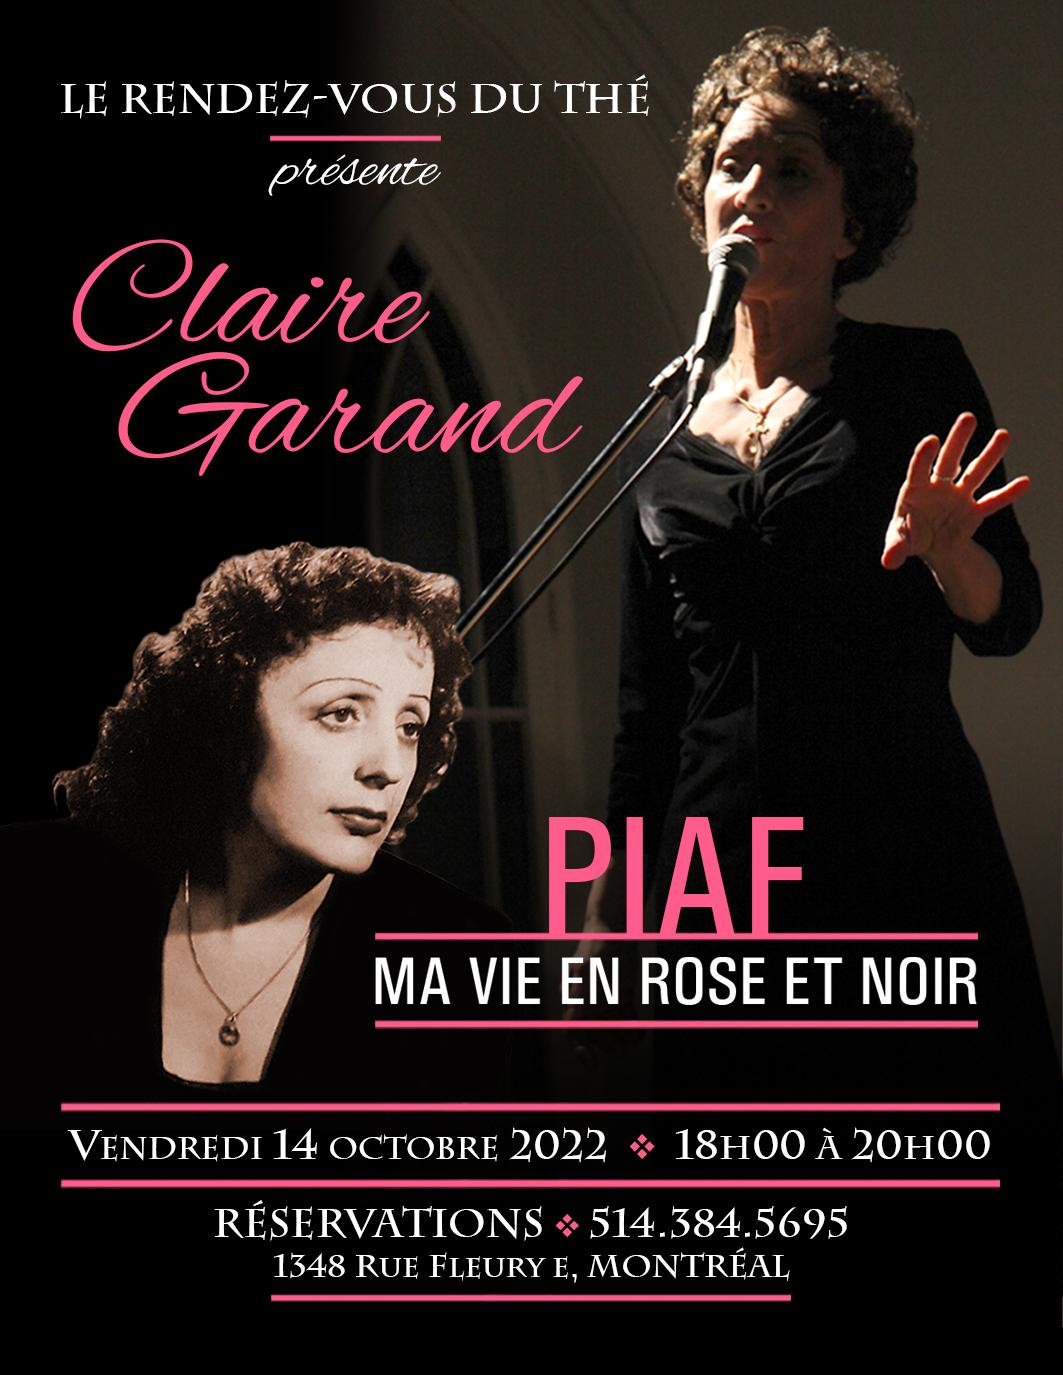 Piaf rvt 14 octobre 2022